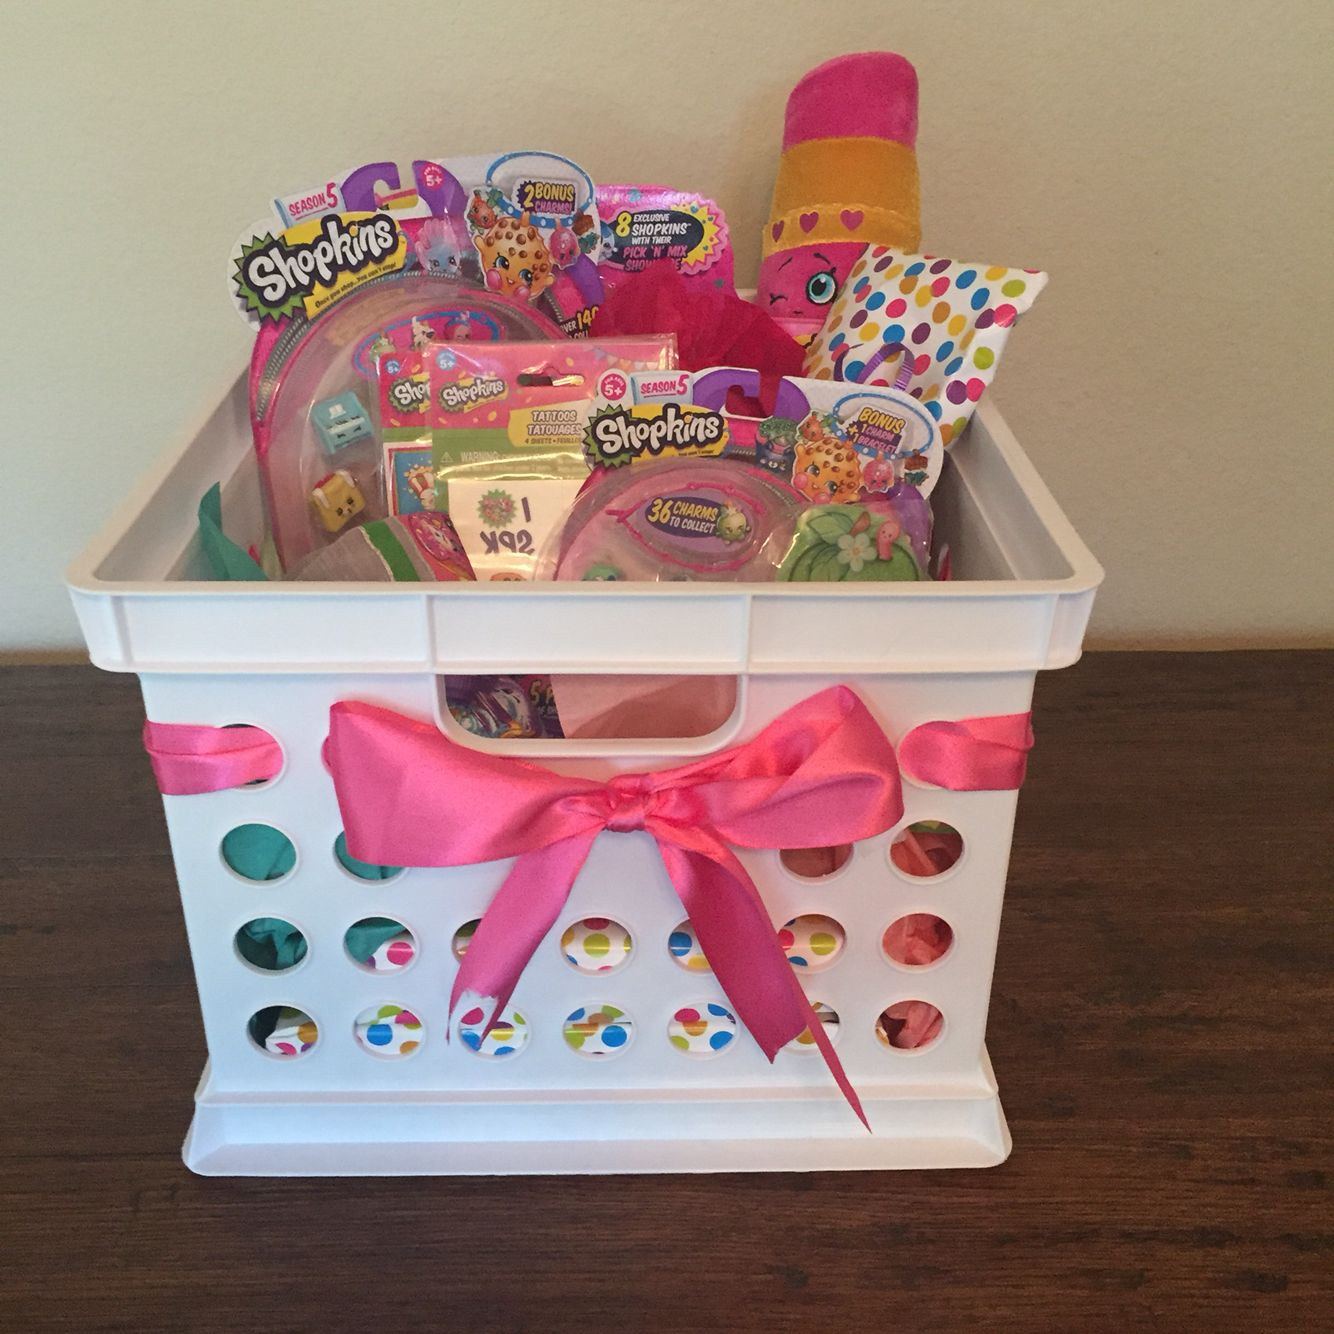 Child Birthday Gift Baskets
 Shopkins Gift Basket